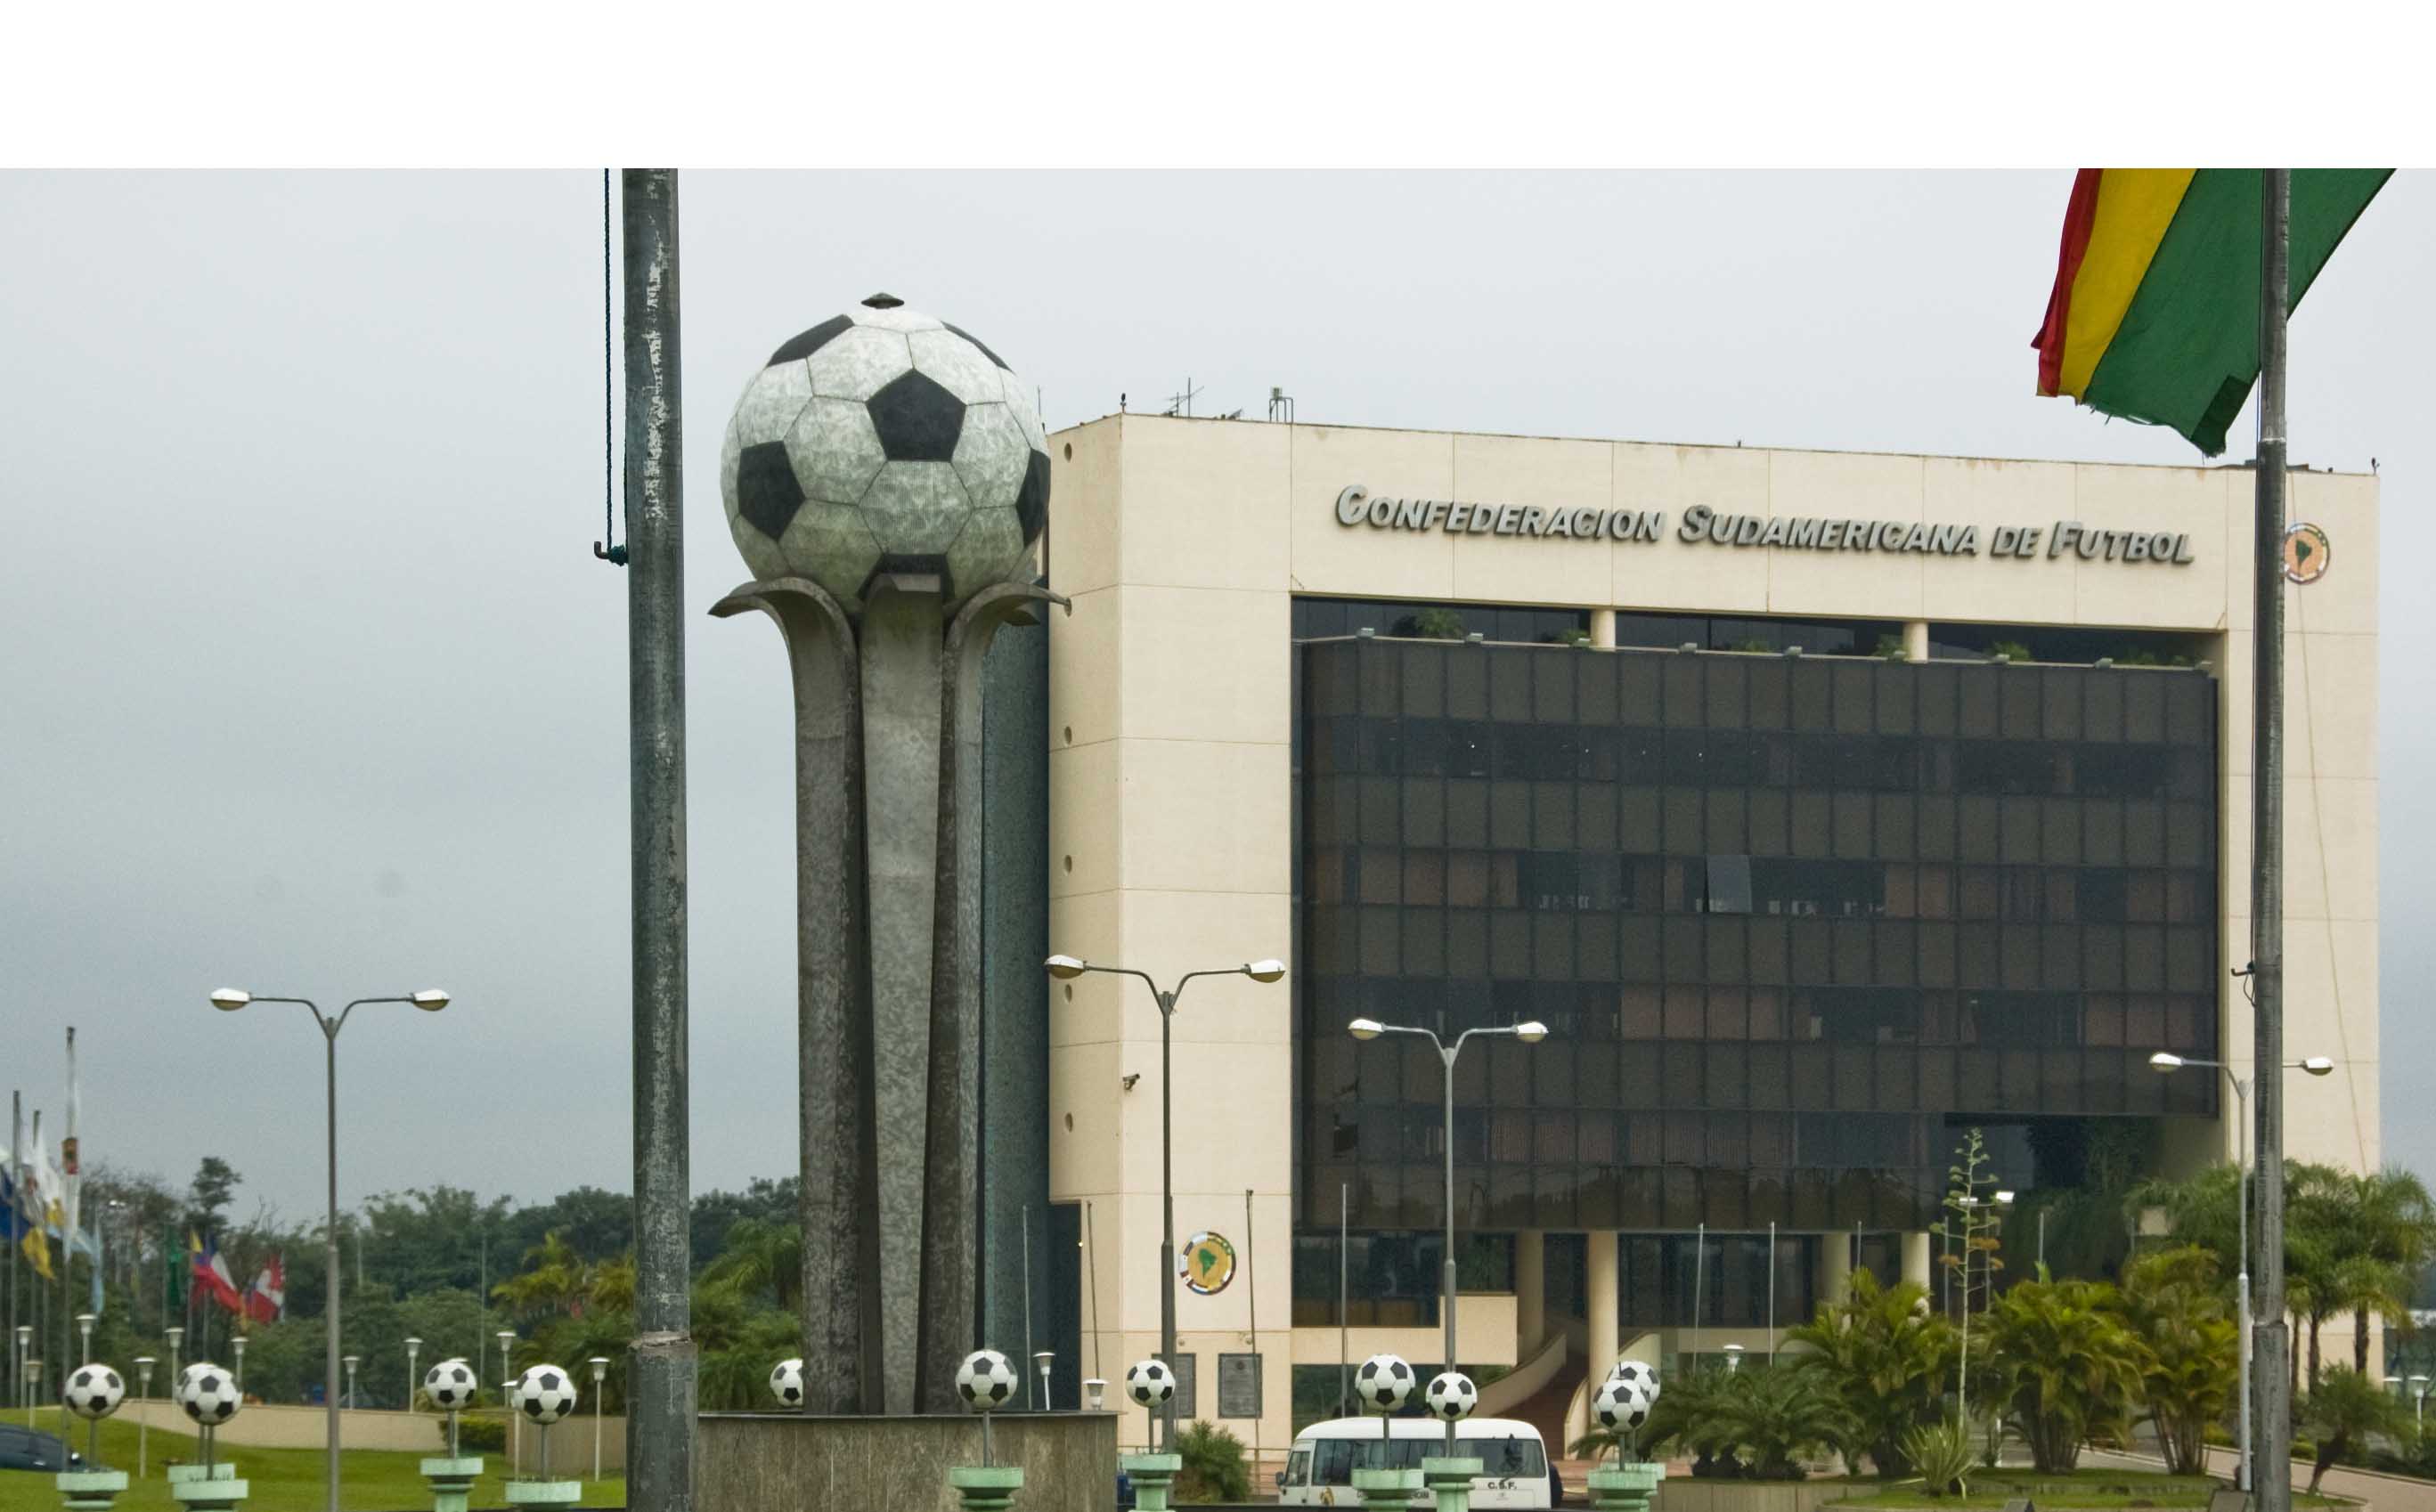 La Confederación Sudamericana de Fútbol realizarán modificaciones en le reglamento actual que entrarán en vigencia a partir de 2017